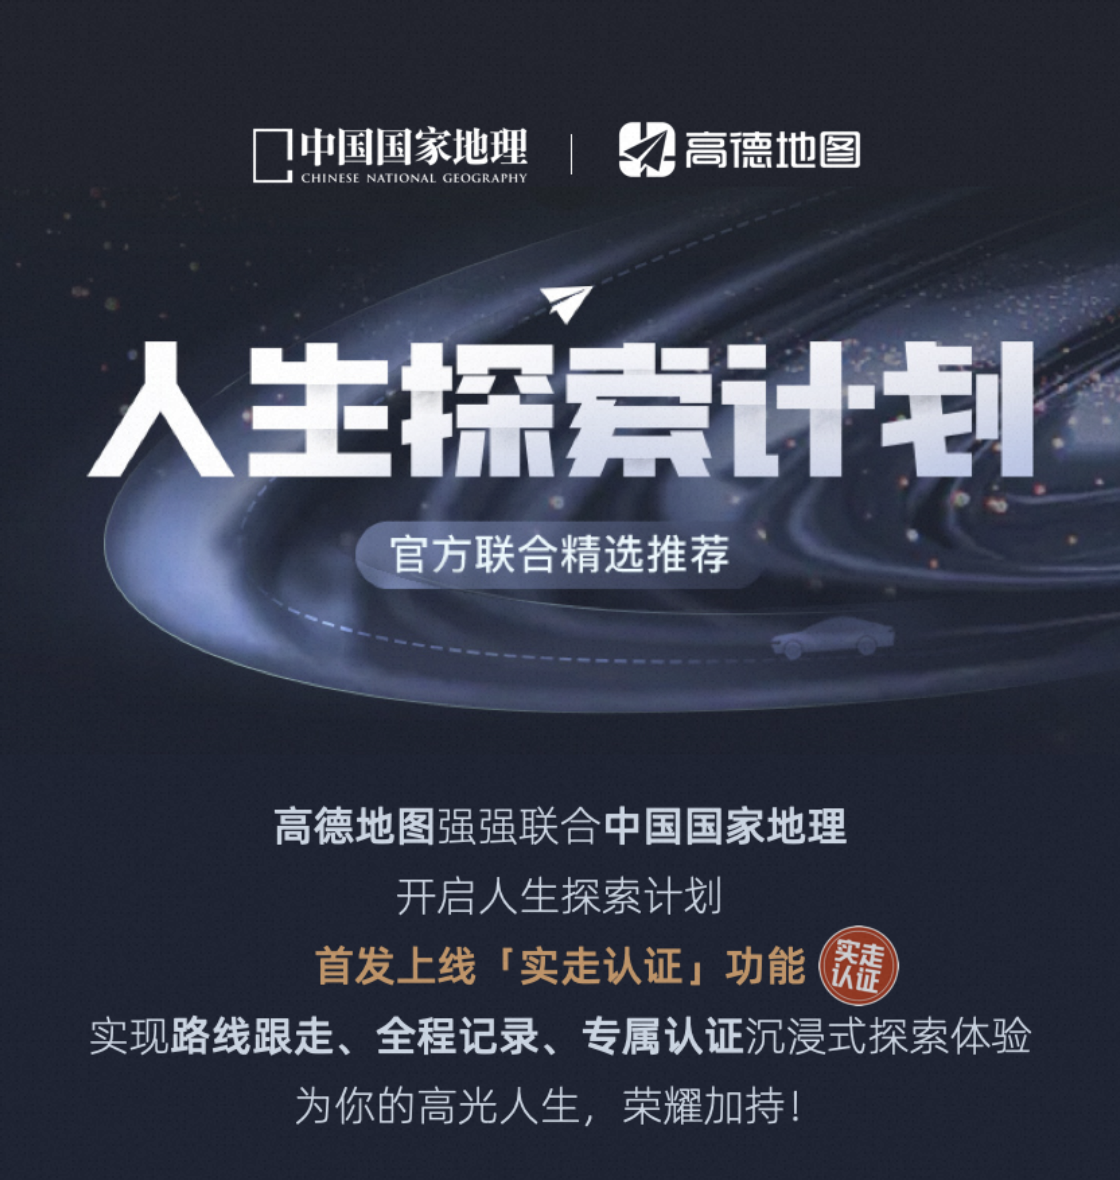 《中国国家地理》联合高德发布“人生探索计划”，可实现精品自驾路线一键导航